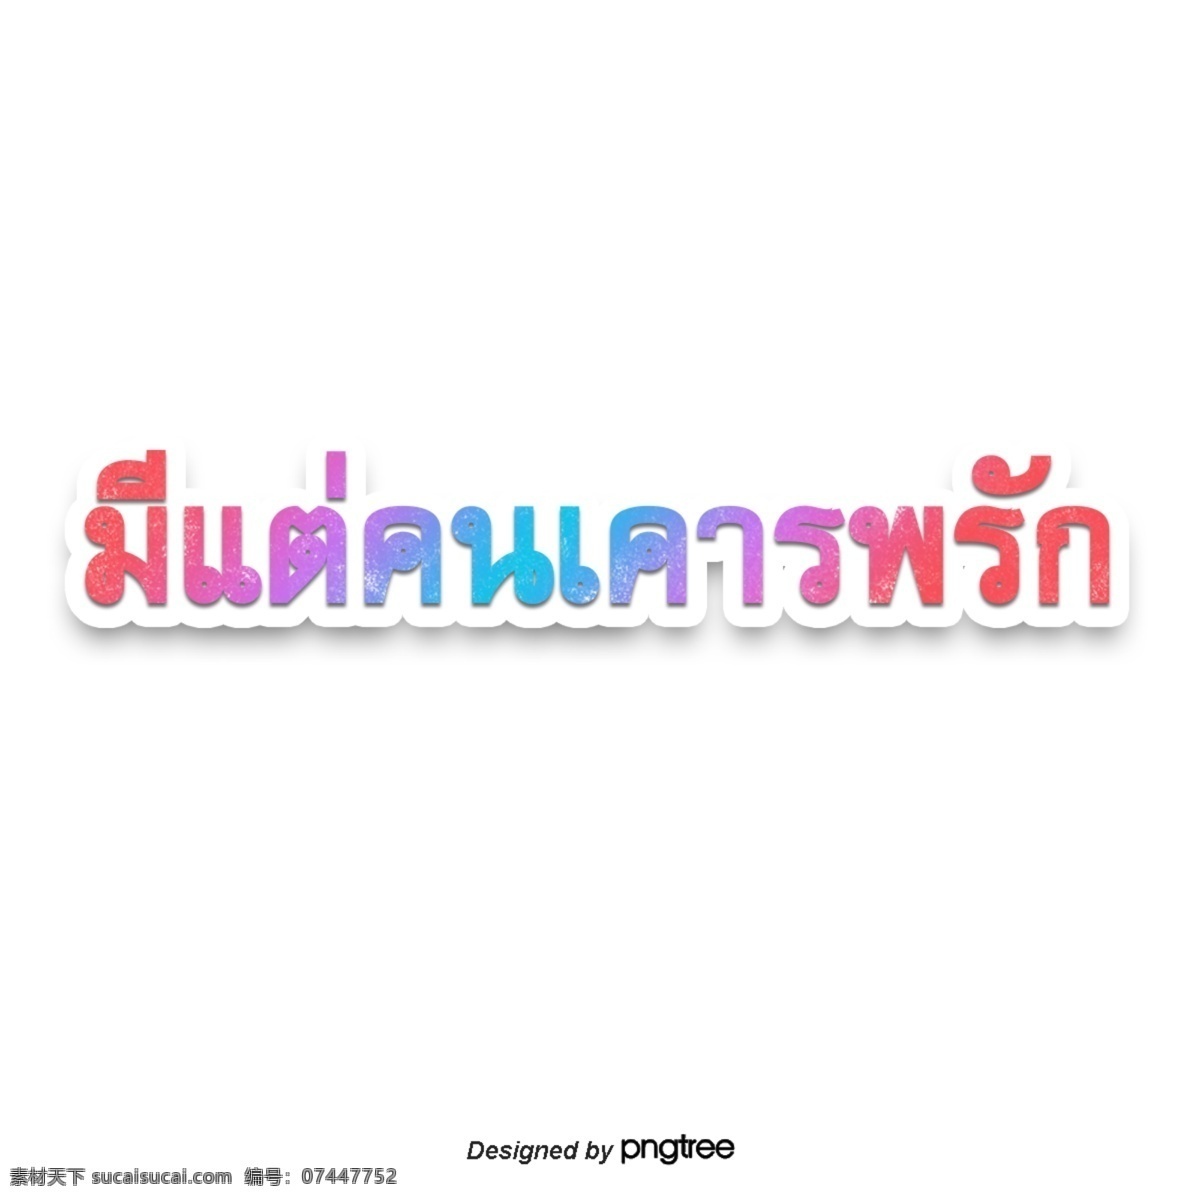 泰国人 尊重 文本 字体 颜色 粉红色 粉红 橘子